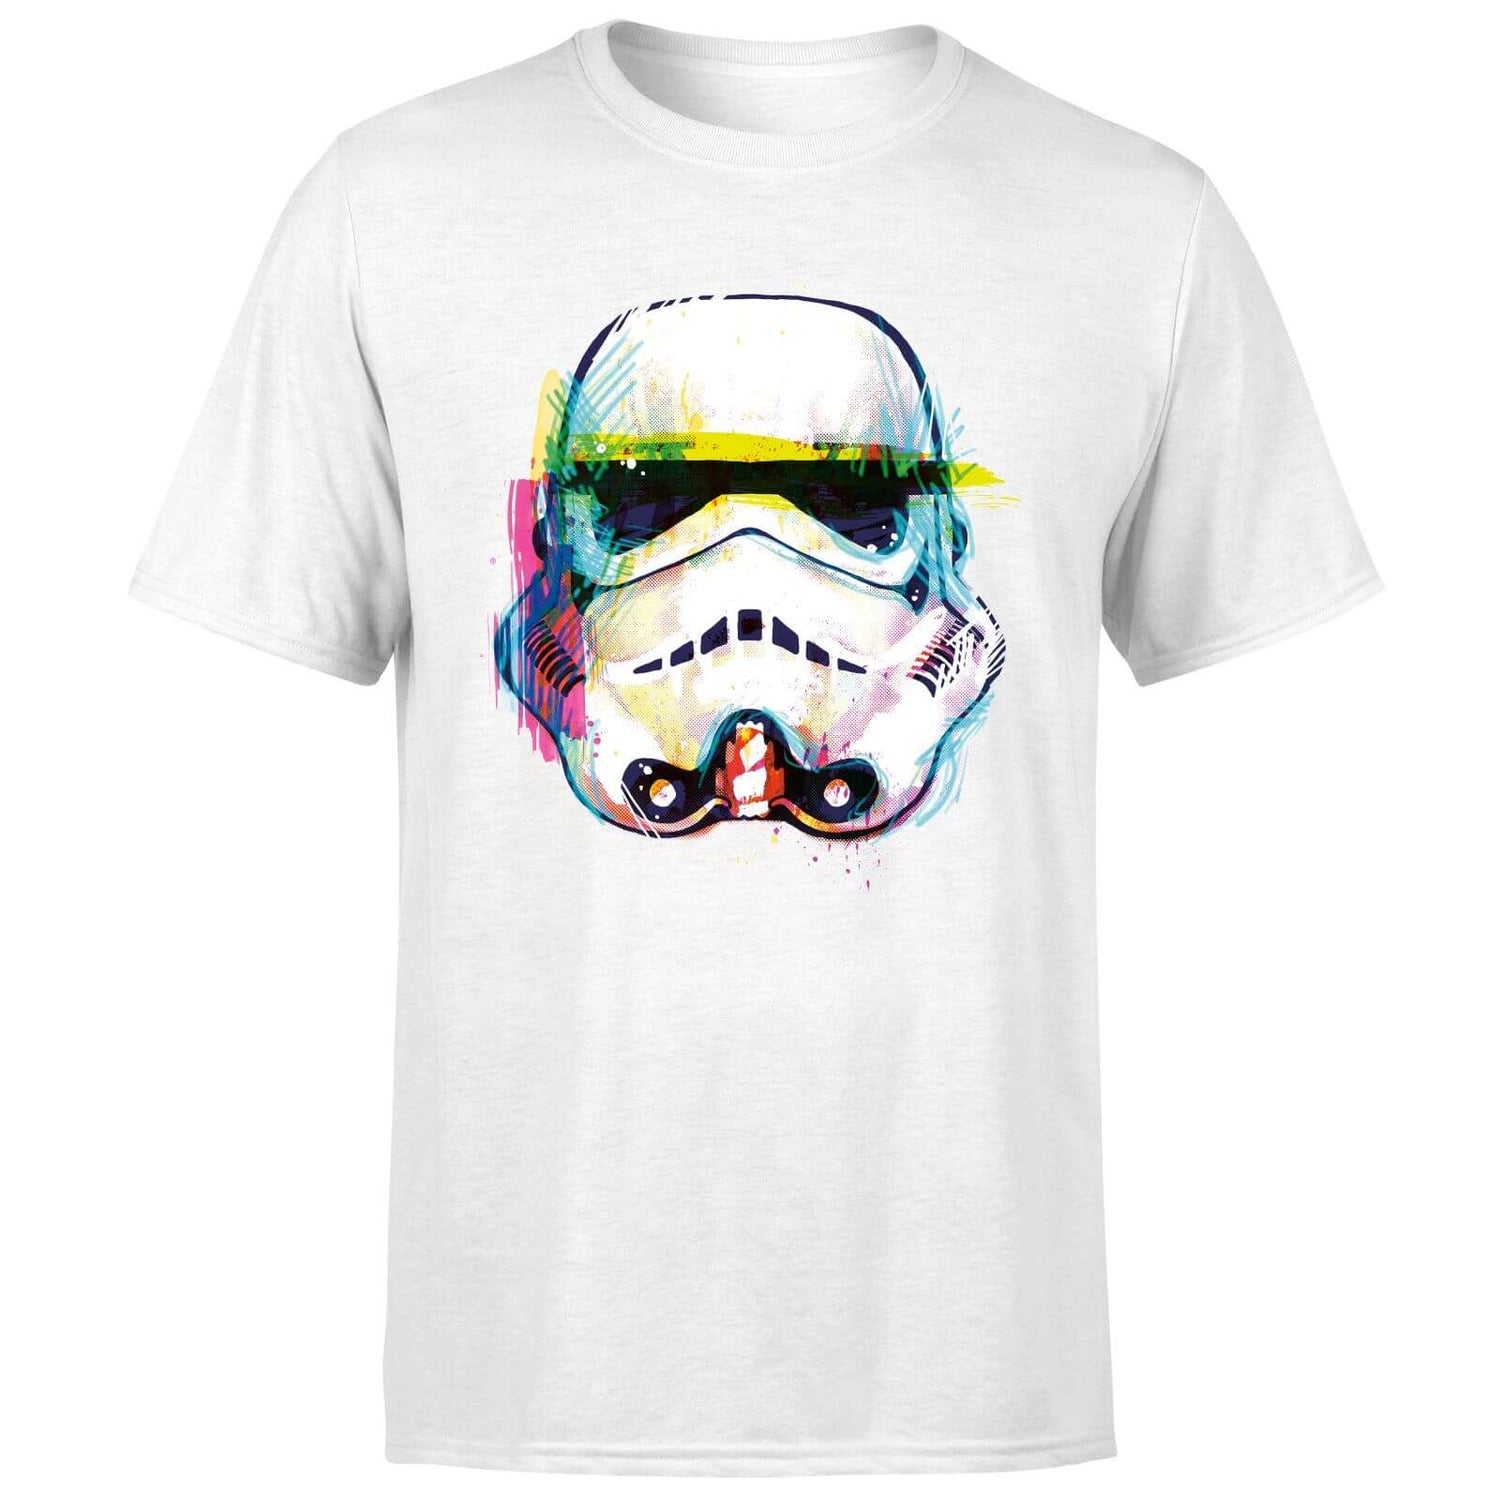 Star Wars Stormtrooper Paintbrush Art T-Shirt - White | My Box US